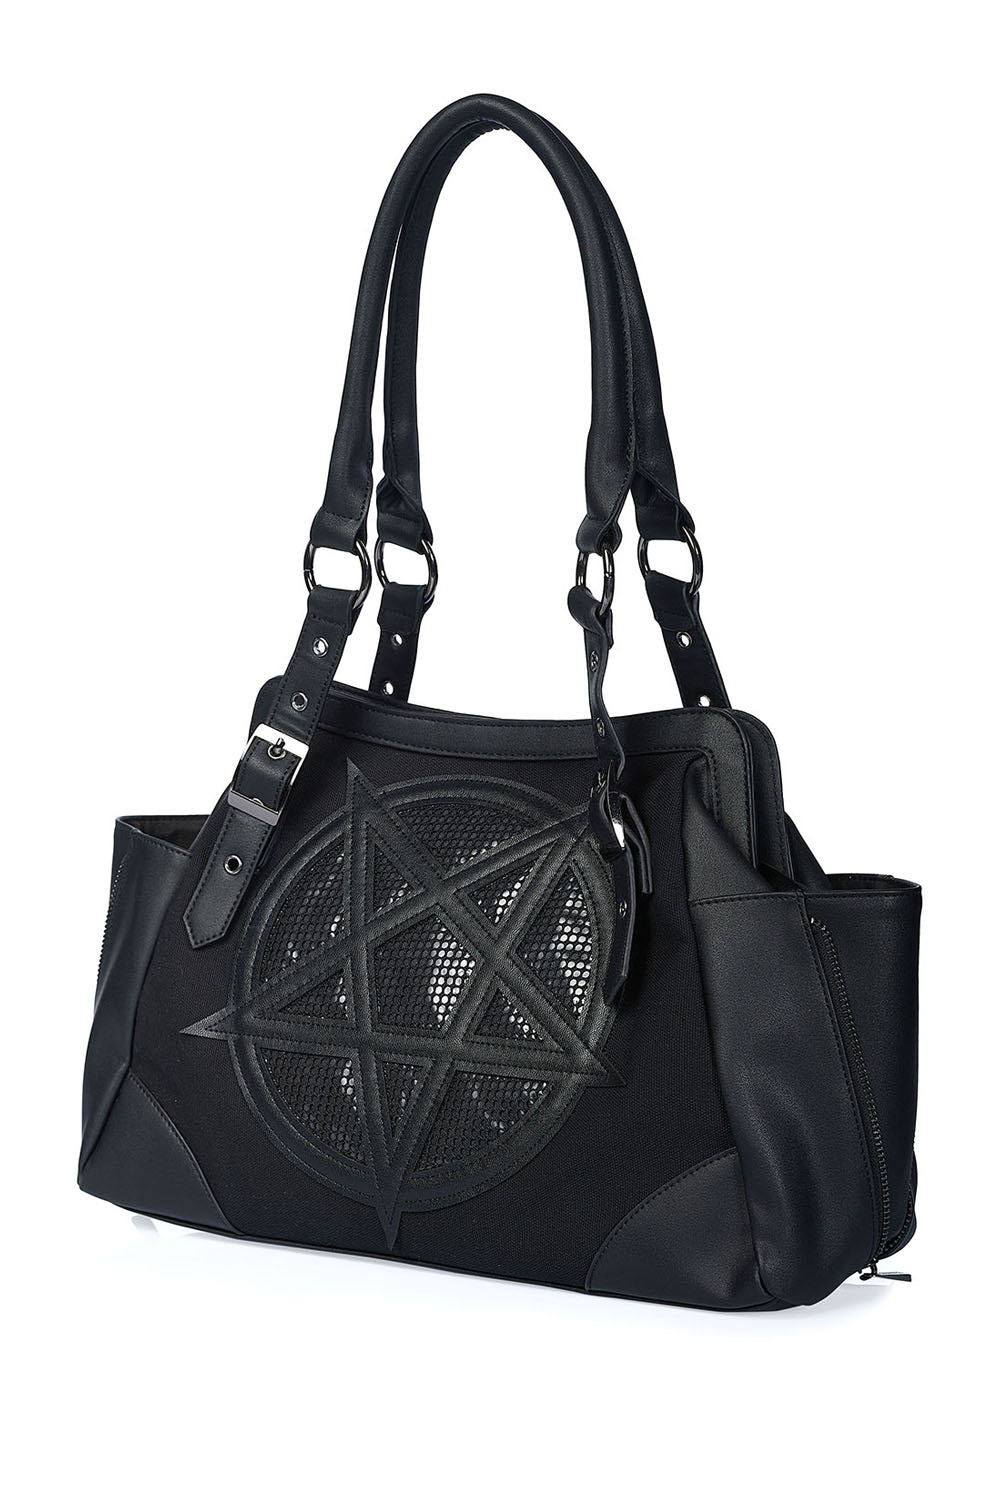 Banned Alternative Satan's Hell Handbag